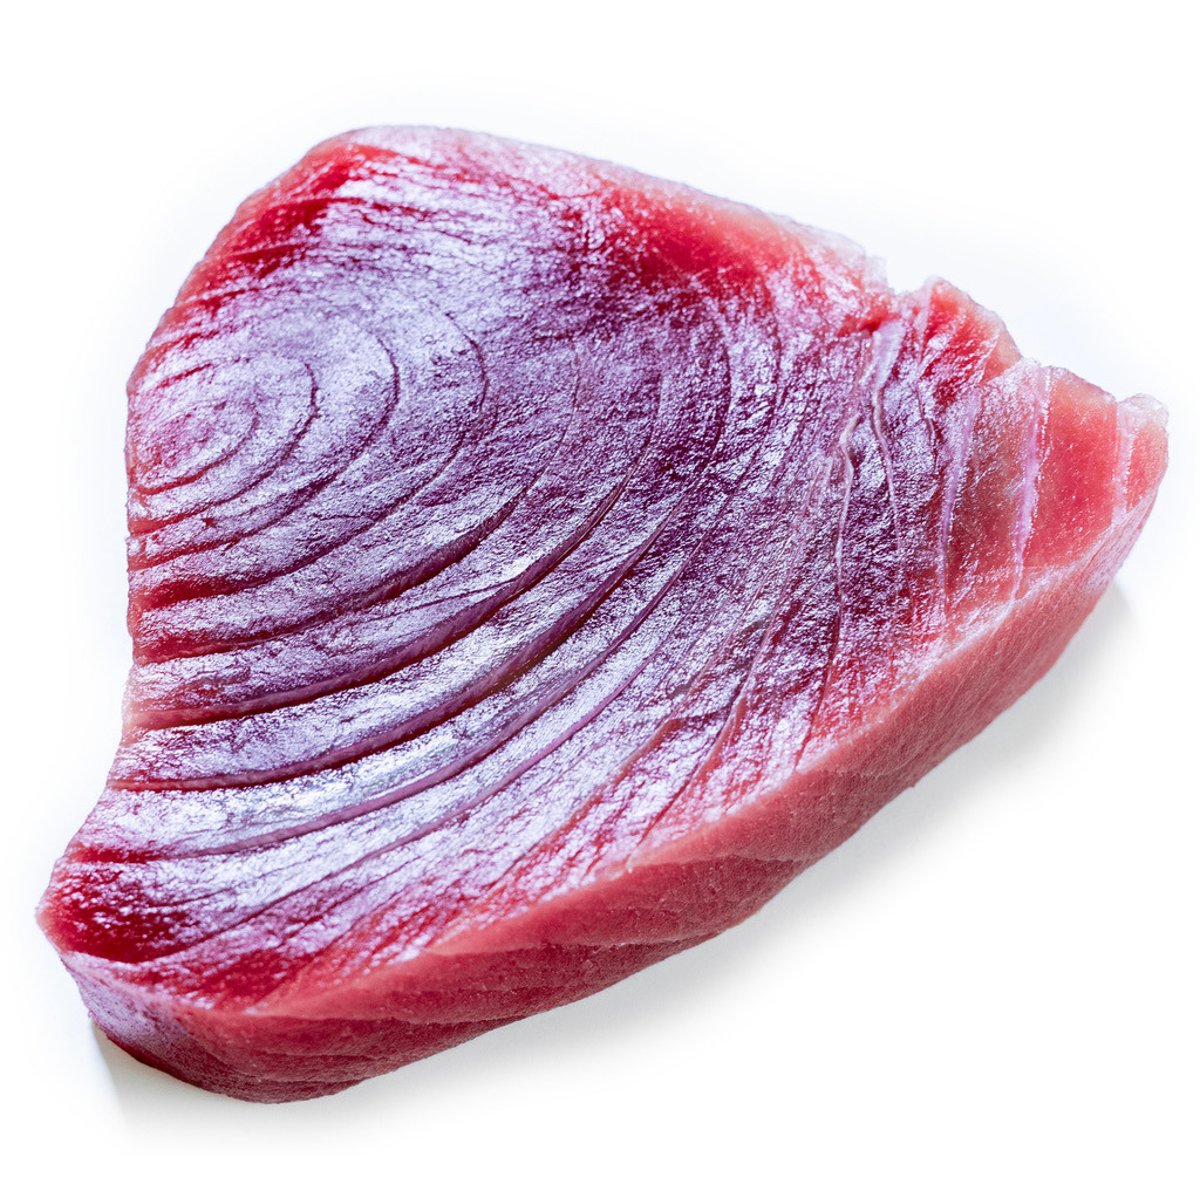 Tuňák žlutoploutvý steak AAA kvalita